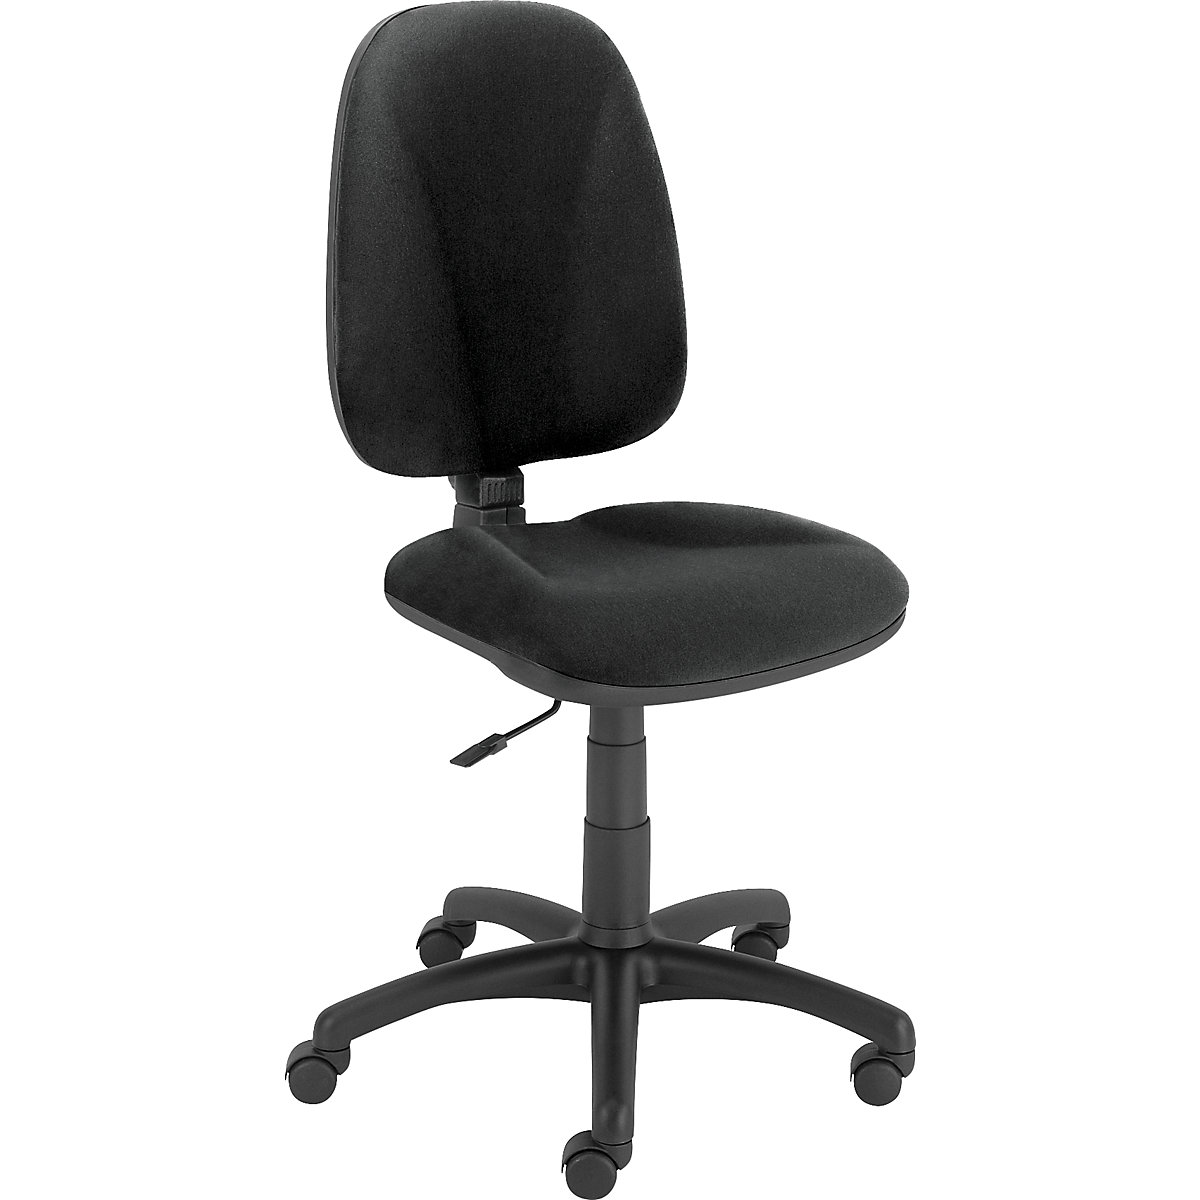 Sillas, sillas de oficina, oficinas, chairs, oficina, giratorias